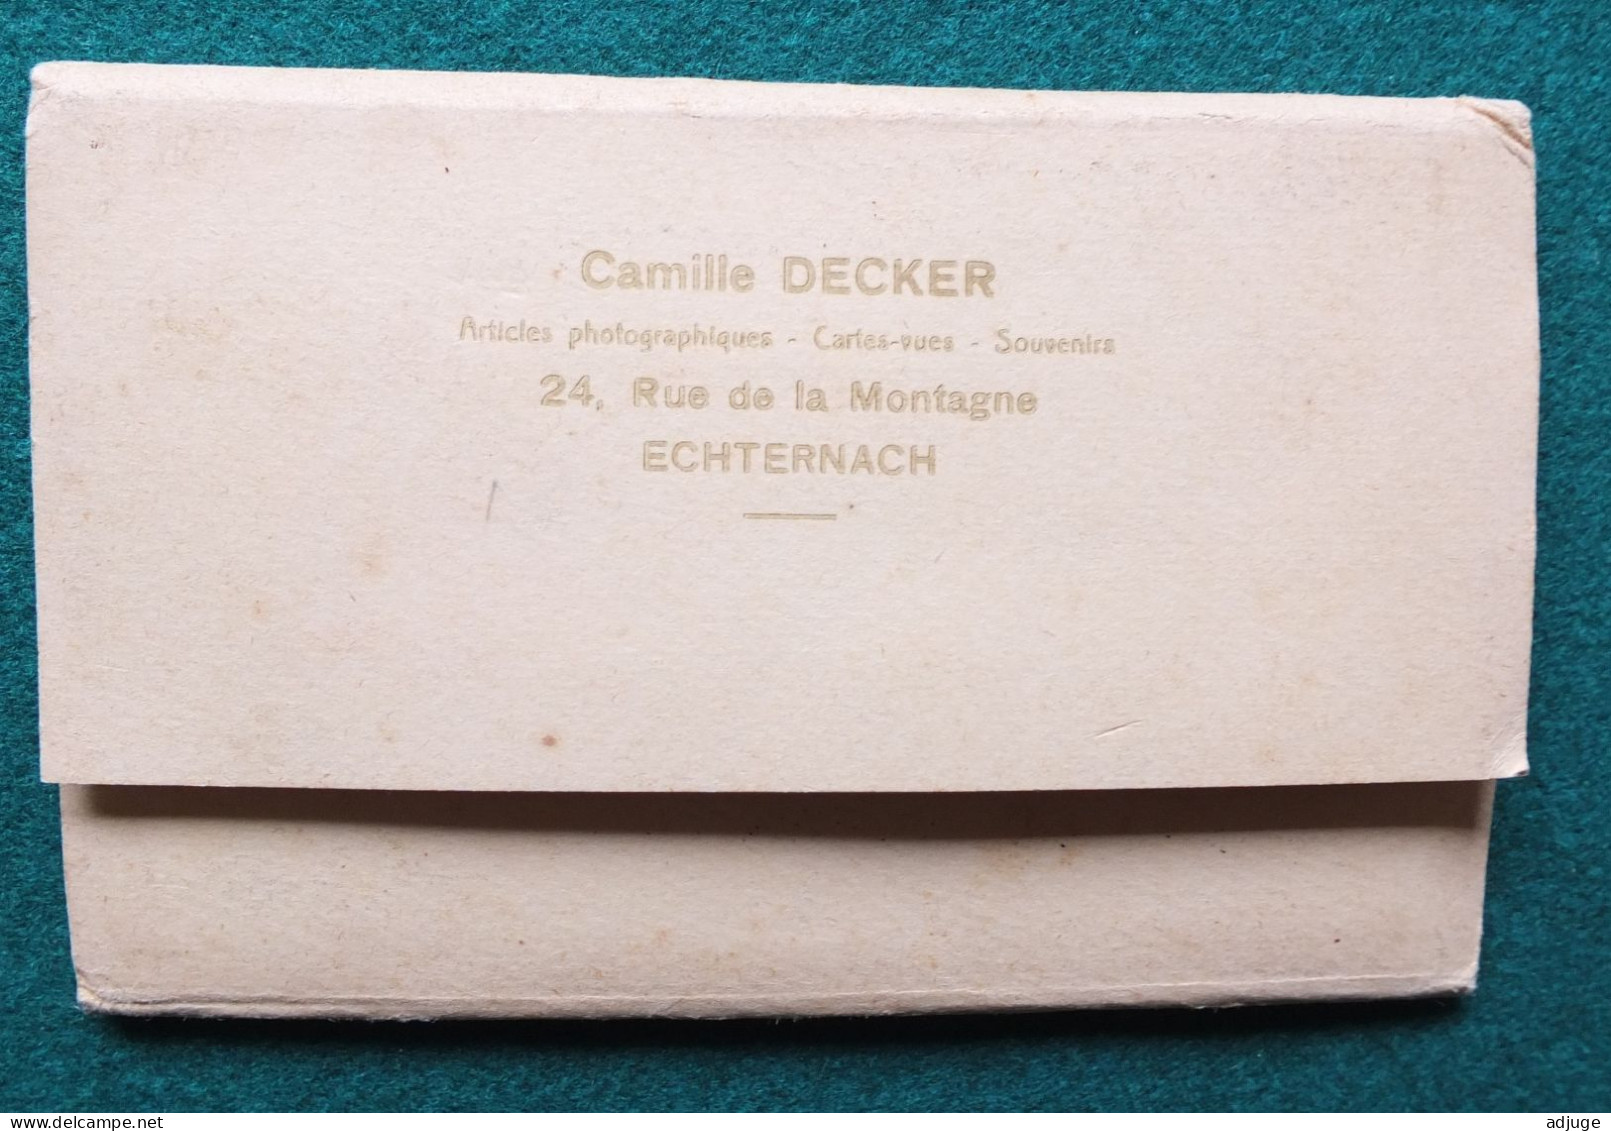 Carnet de 12 CPA -ECHTERNACH - Saint-Willibord & la Procession Dansante -PhoT Camille DECKER* SUP - cf. scans